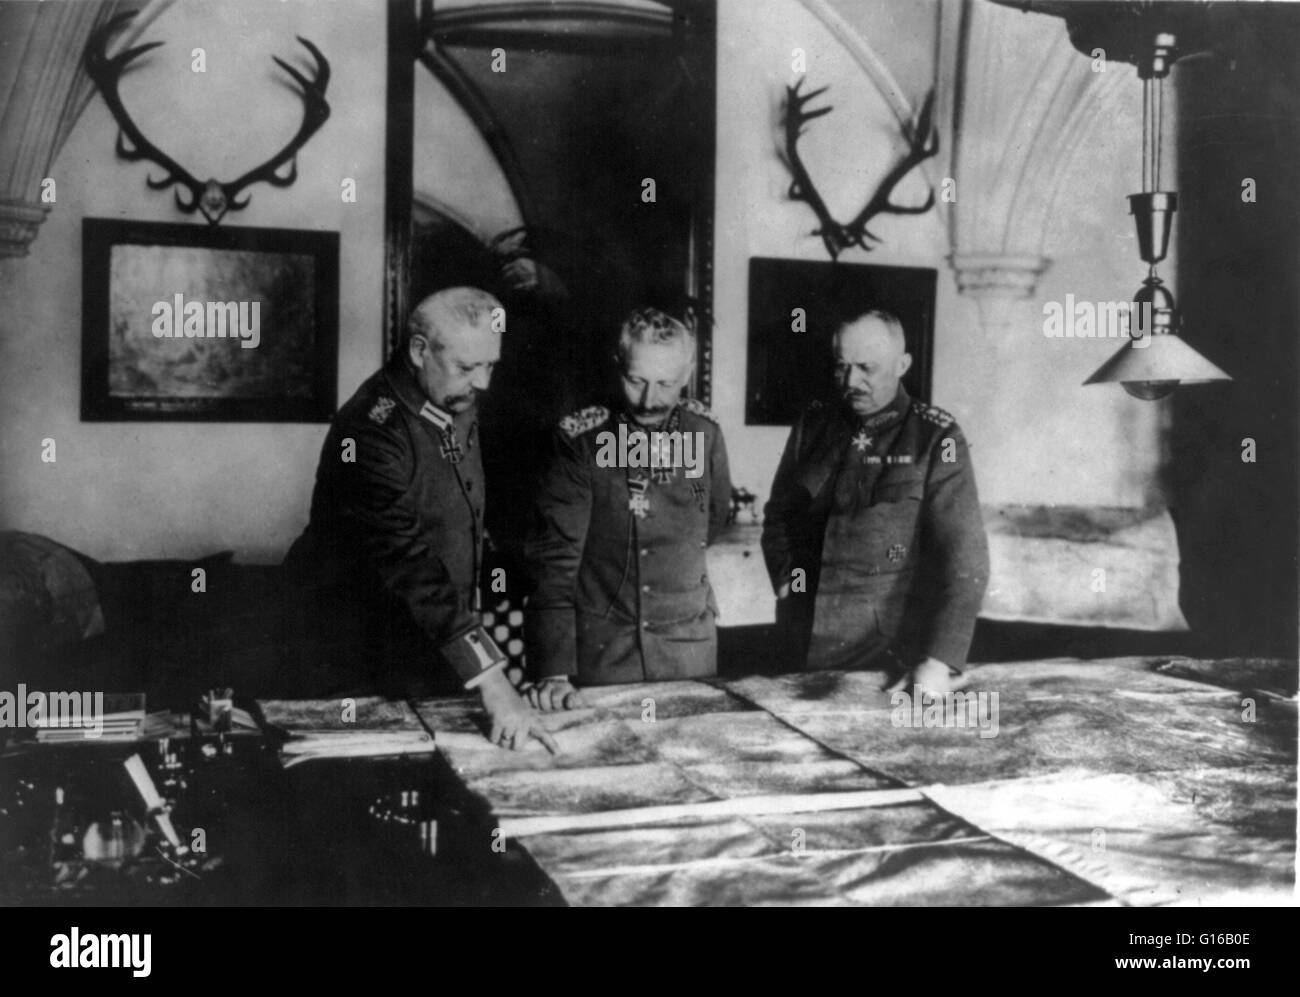 Fotografia mostra il generale Paul von Hindenburg, il Kaiser Guglielmo II, e il generale Erich Ludendorff sta in piedi in una tabella, esaminando le mappe di grandi dimensioni, circa 1914-18. Wilhelm II (27 gennaio 1859 - Giugno 4, 1941) è stato l'ultimo imperatore tedesco e re di Prussia, pregiudiziale il Foto Stock